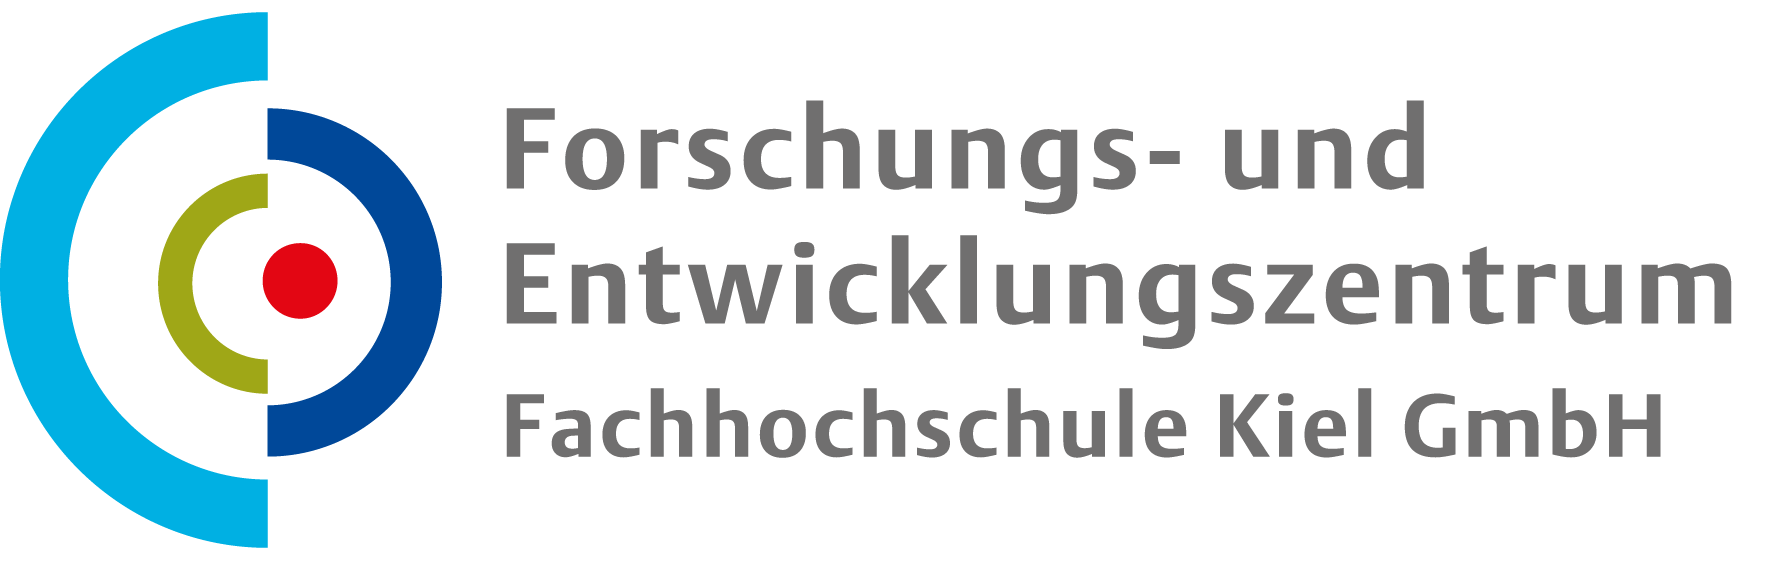 Logo des Forschungs- und Entwicklungszentrum Fachhochschule Kiel GmbH